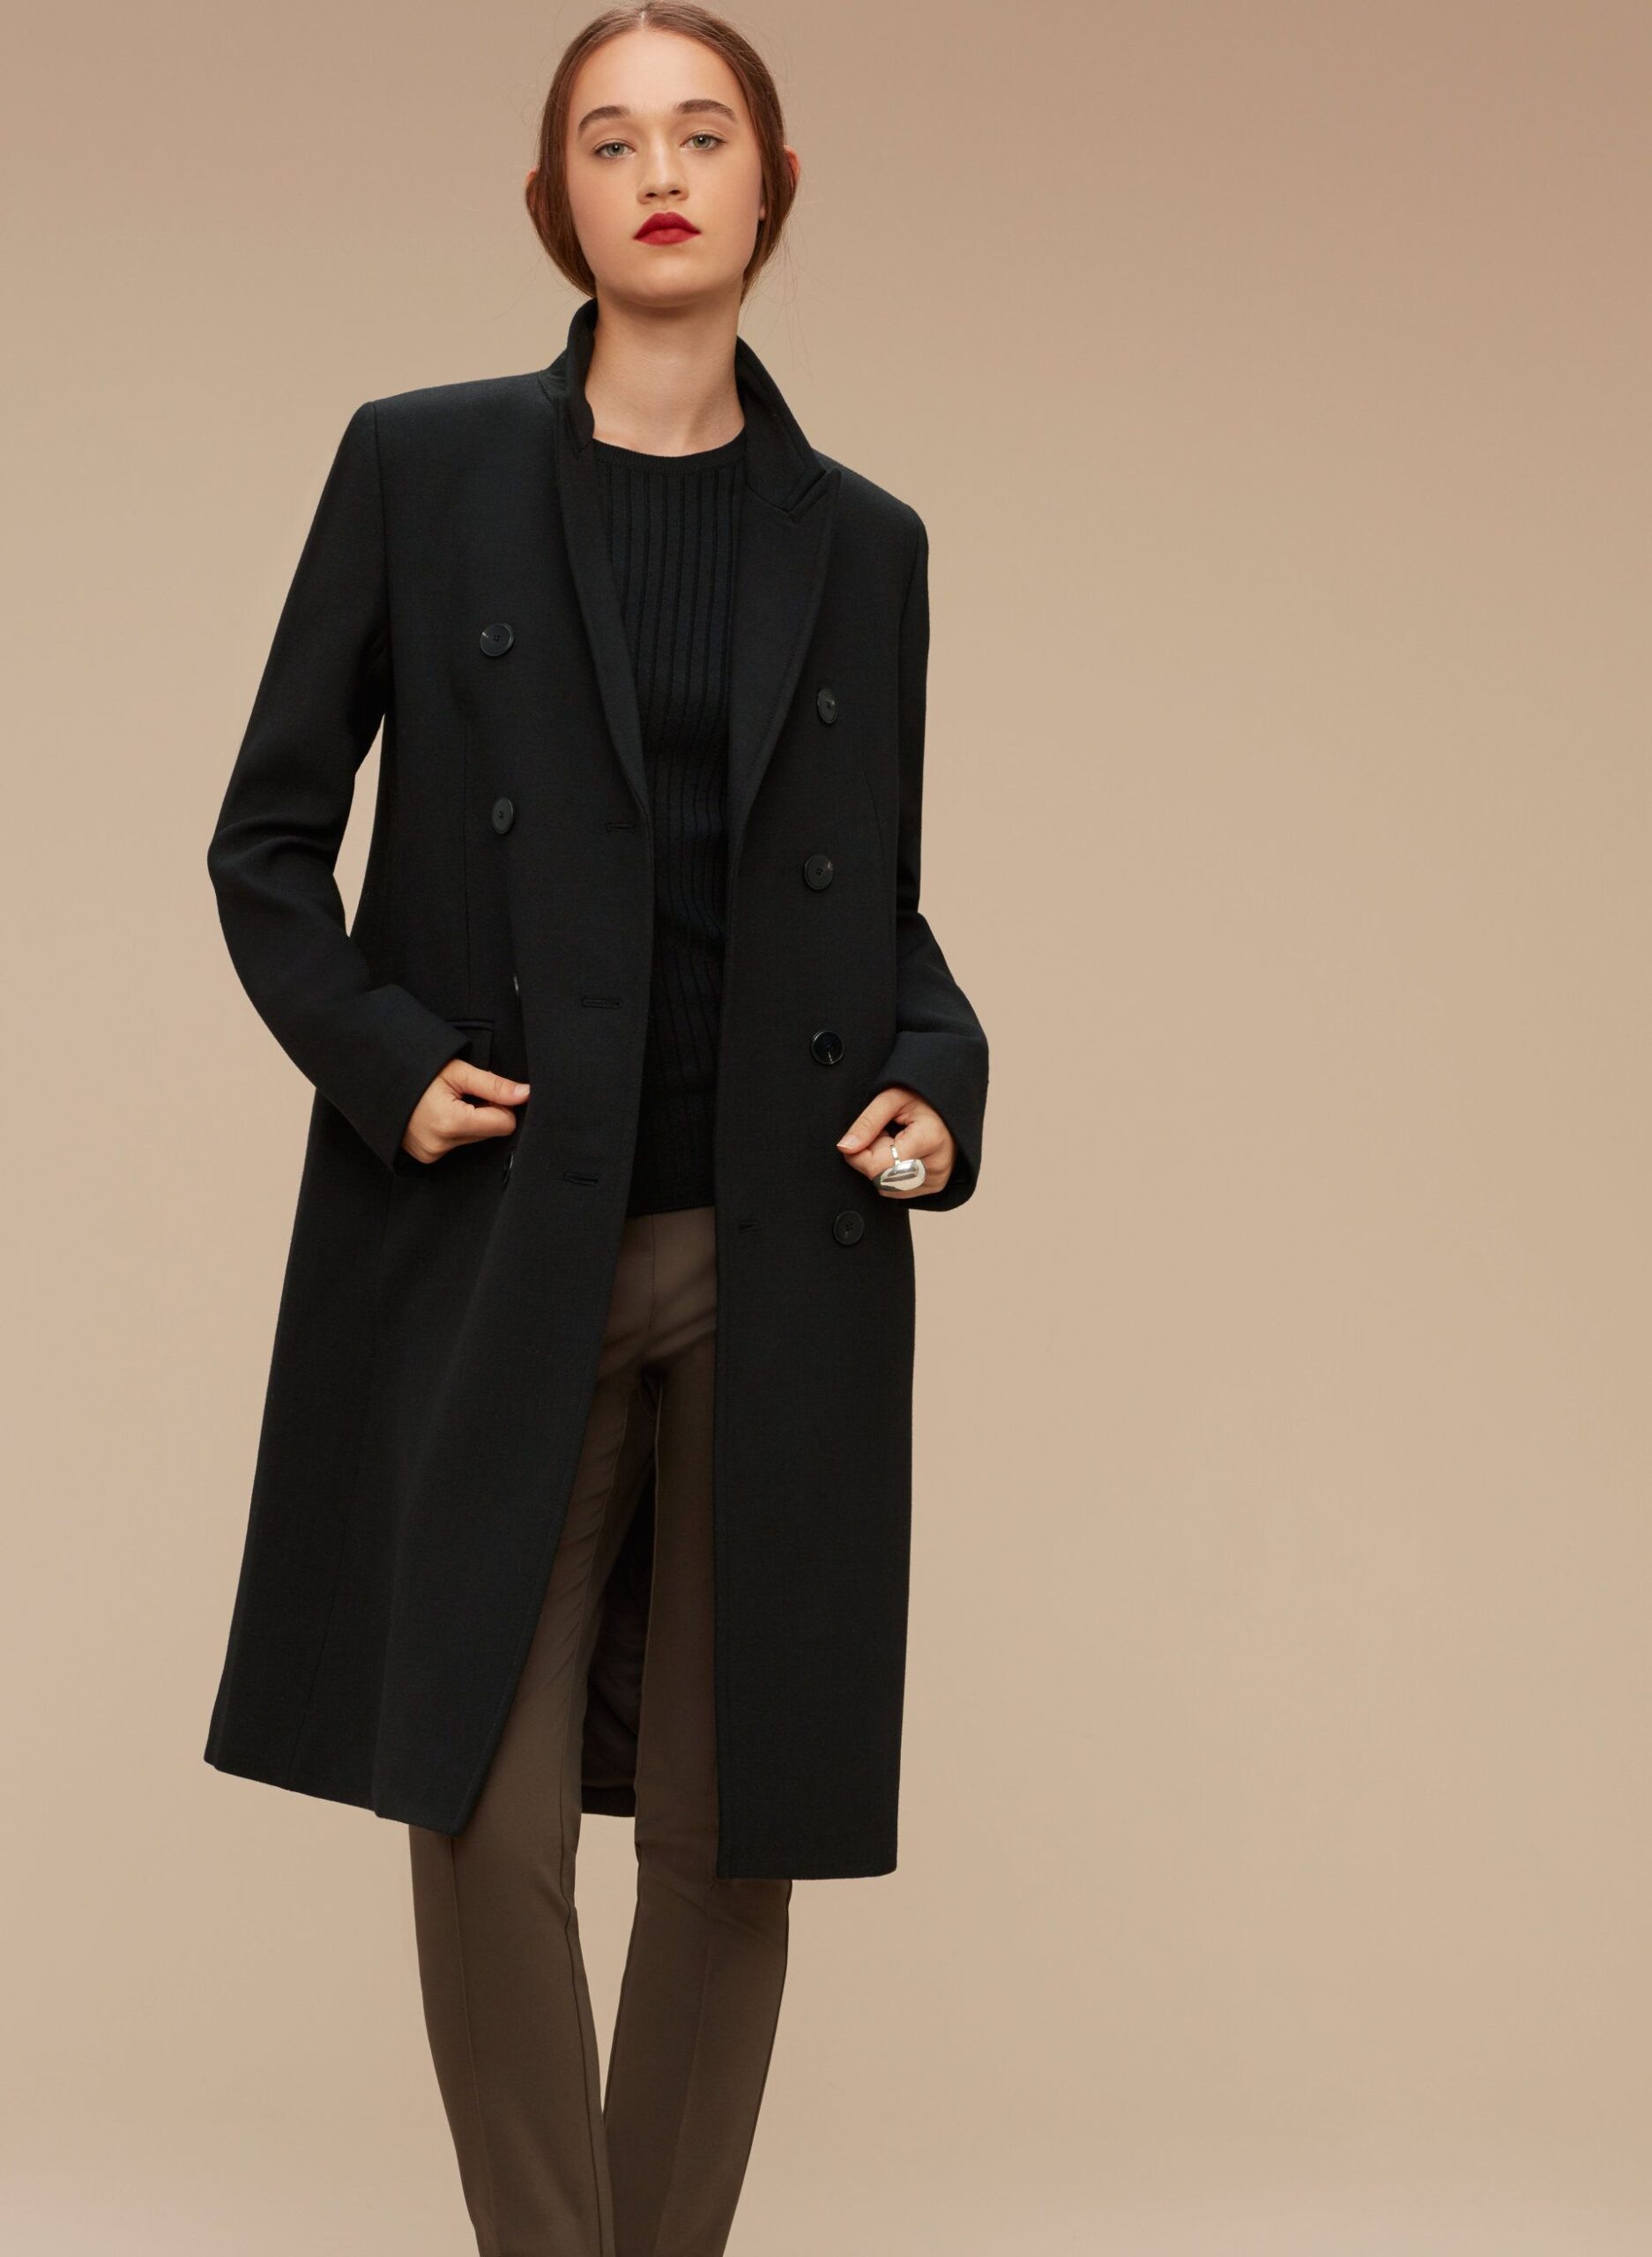 coat black scaled 1 - Moda autunno-inverno 2020/2021: Passione cappotti colorati